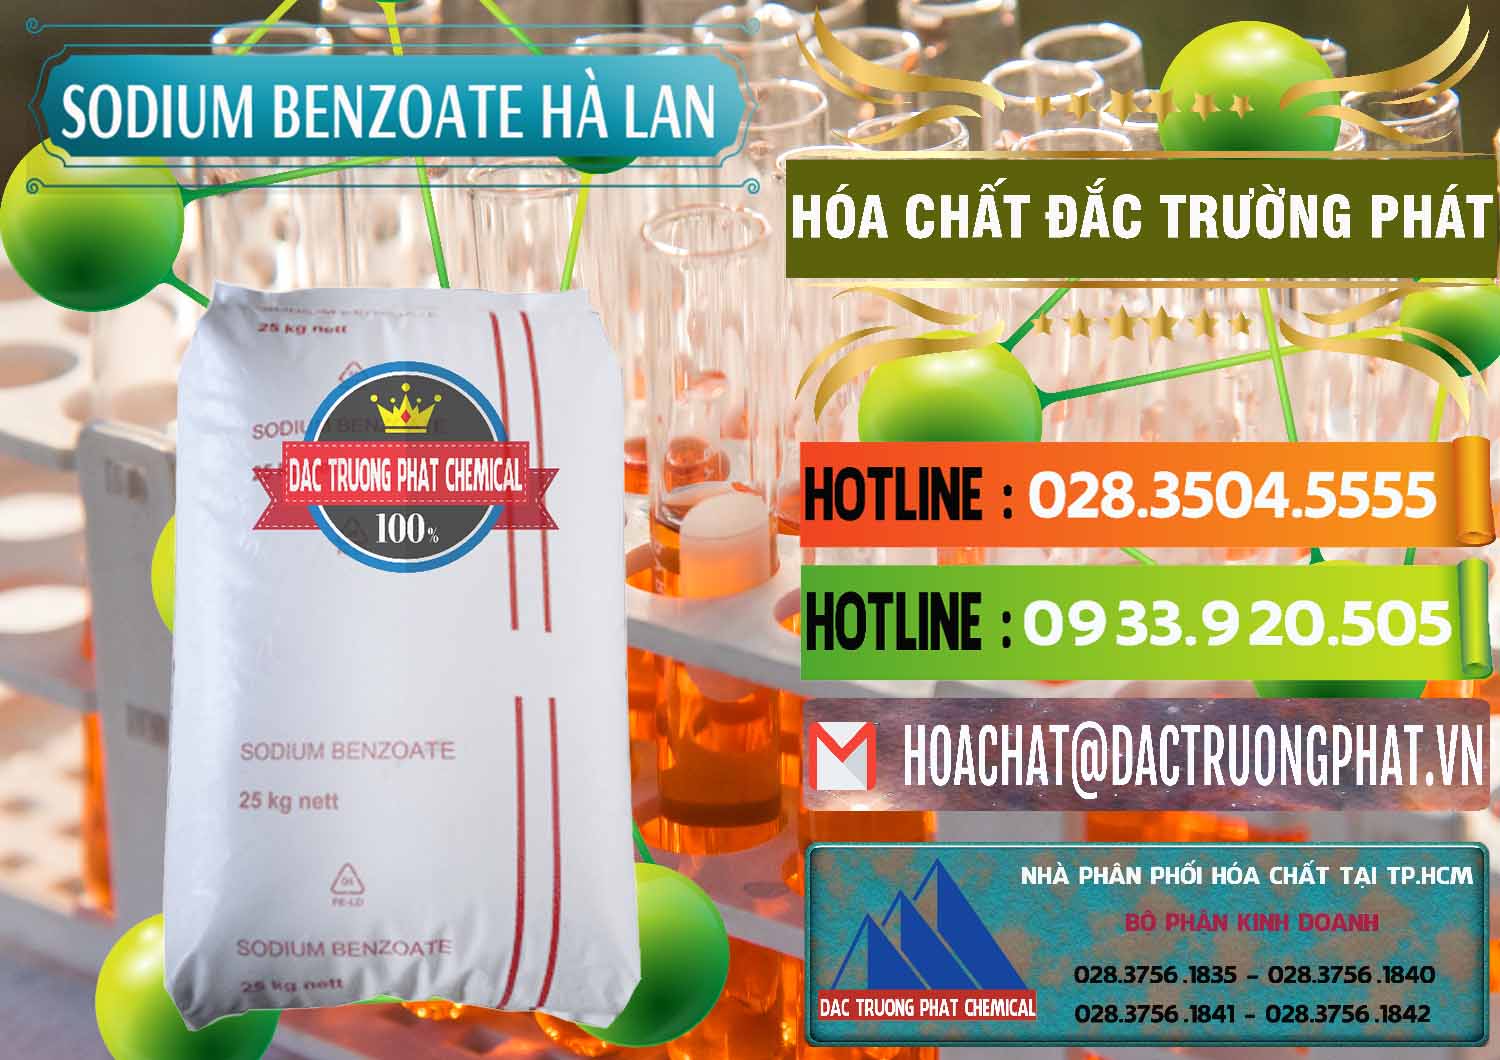 Bán & phân phối Sodium Benzoate - Mốc Bột Chữ Cam Hà Lan Netherlands - 0360 - Chuyên phân phối _ cung cấp hóa chất tại TP.HCM - cungcaphoachat.com.vn